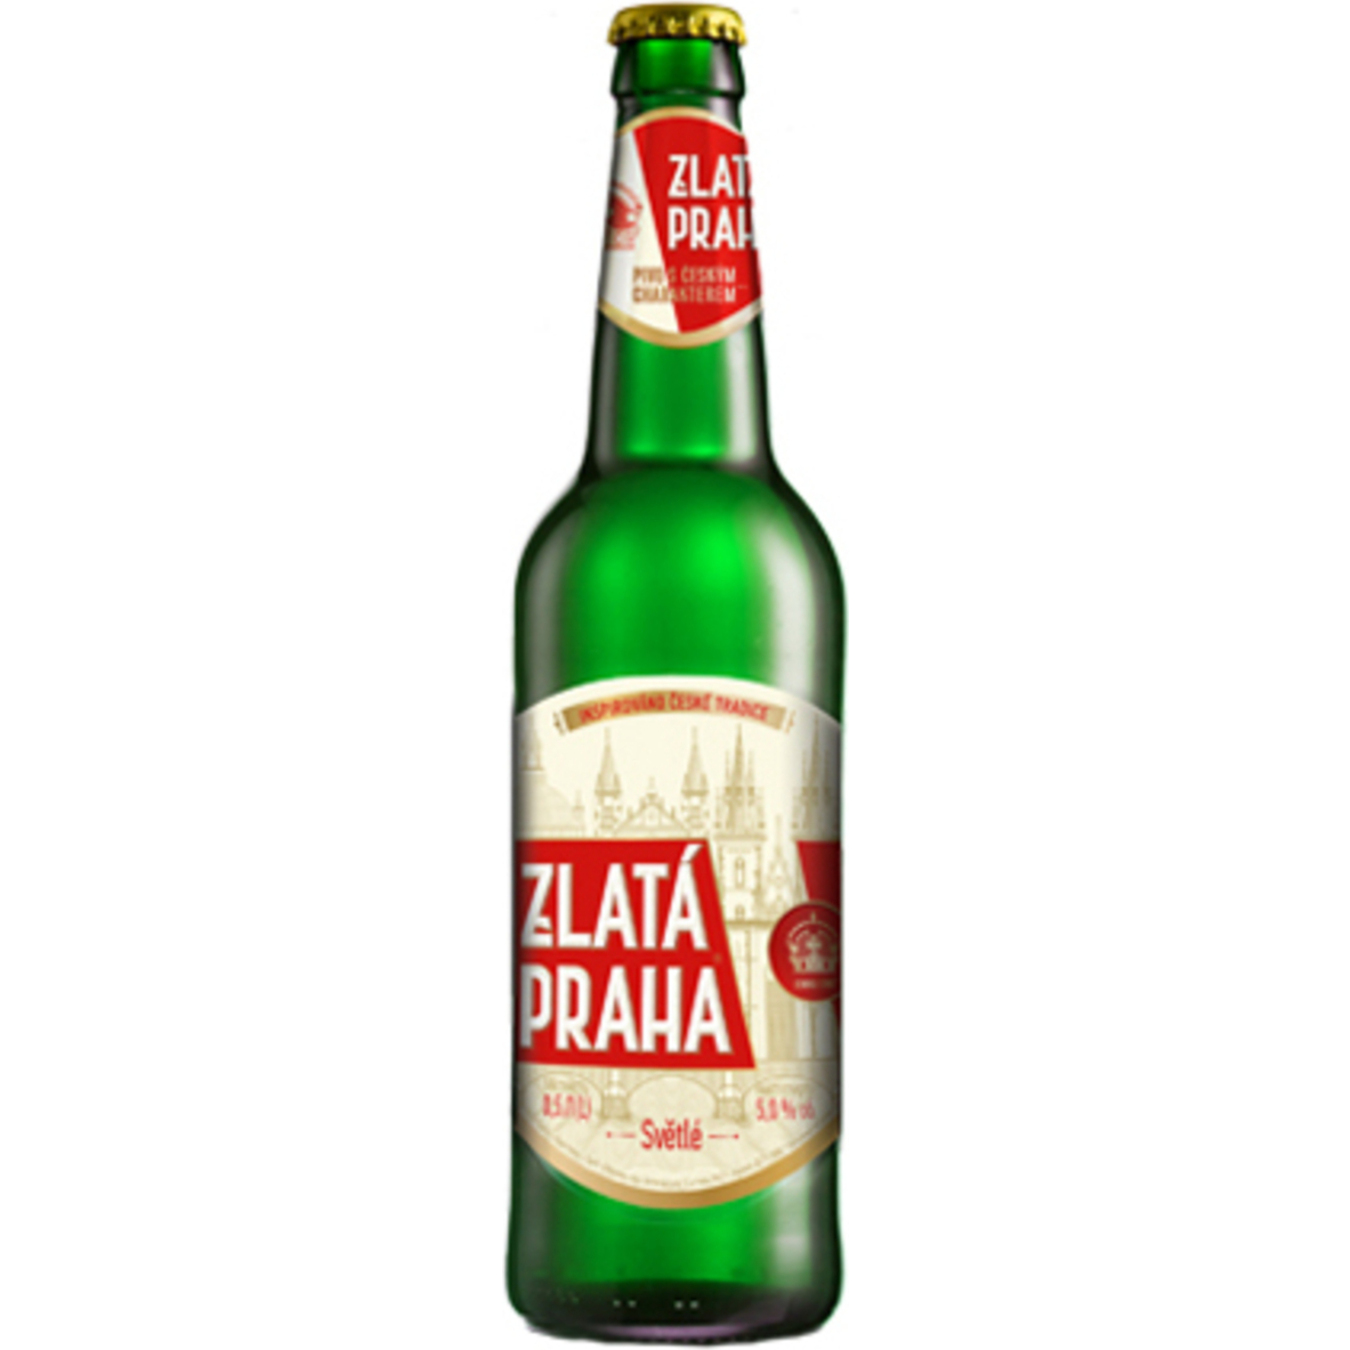 Zlata Praha light beer 5% 0,5l